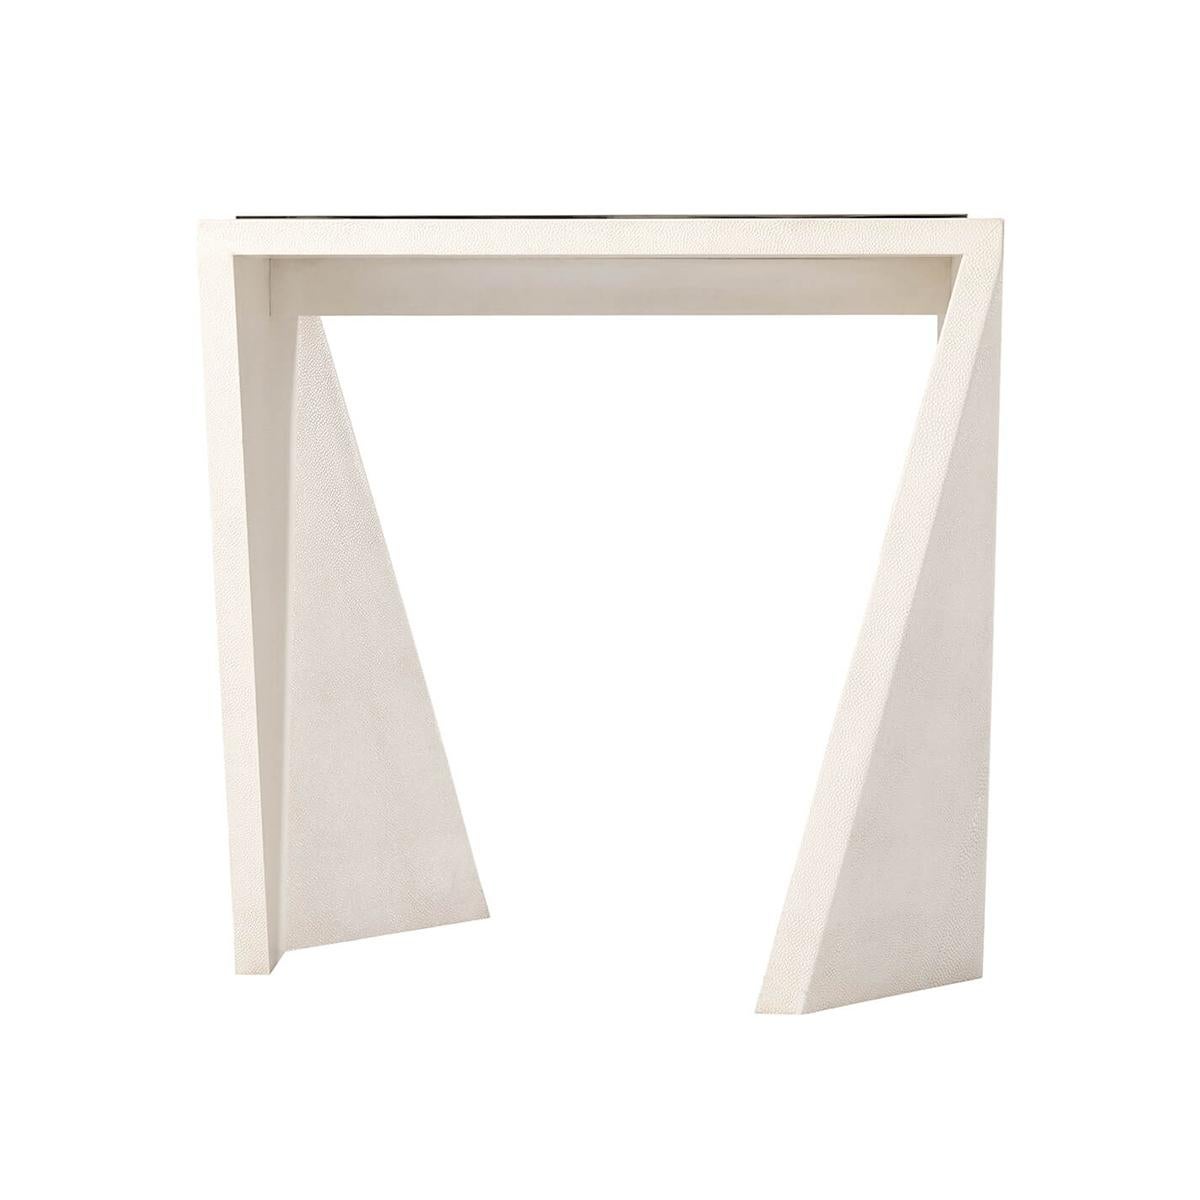  un cuir ivoire gaufré de galuchat enveloppant une table d'appoint moderne modulaire dont le plateau rectangulaire est orné d'une galerie moulée nickelée. La forme de la base est une forme géométrique angulaire irrégulière.

Dimensions : 24